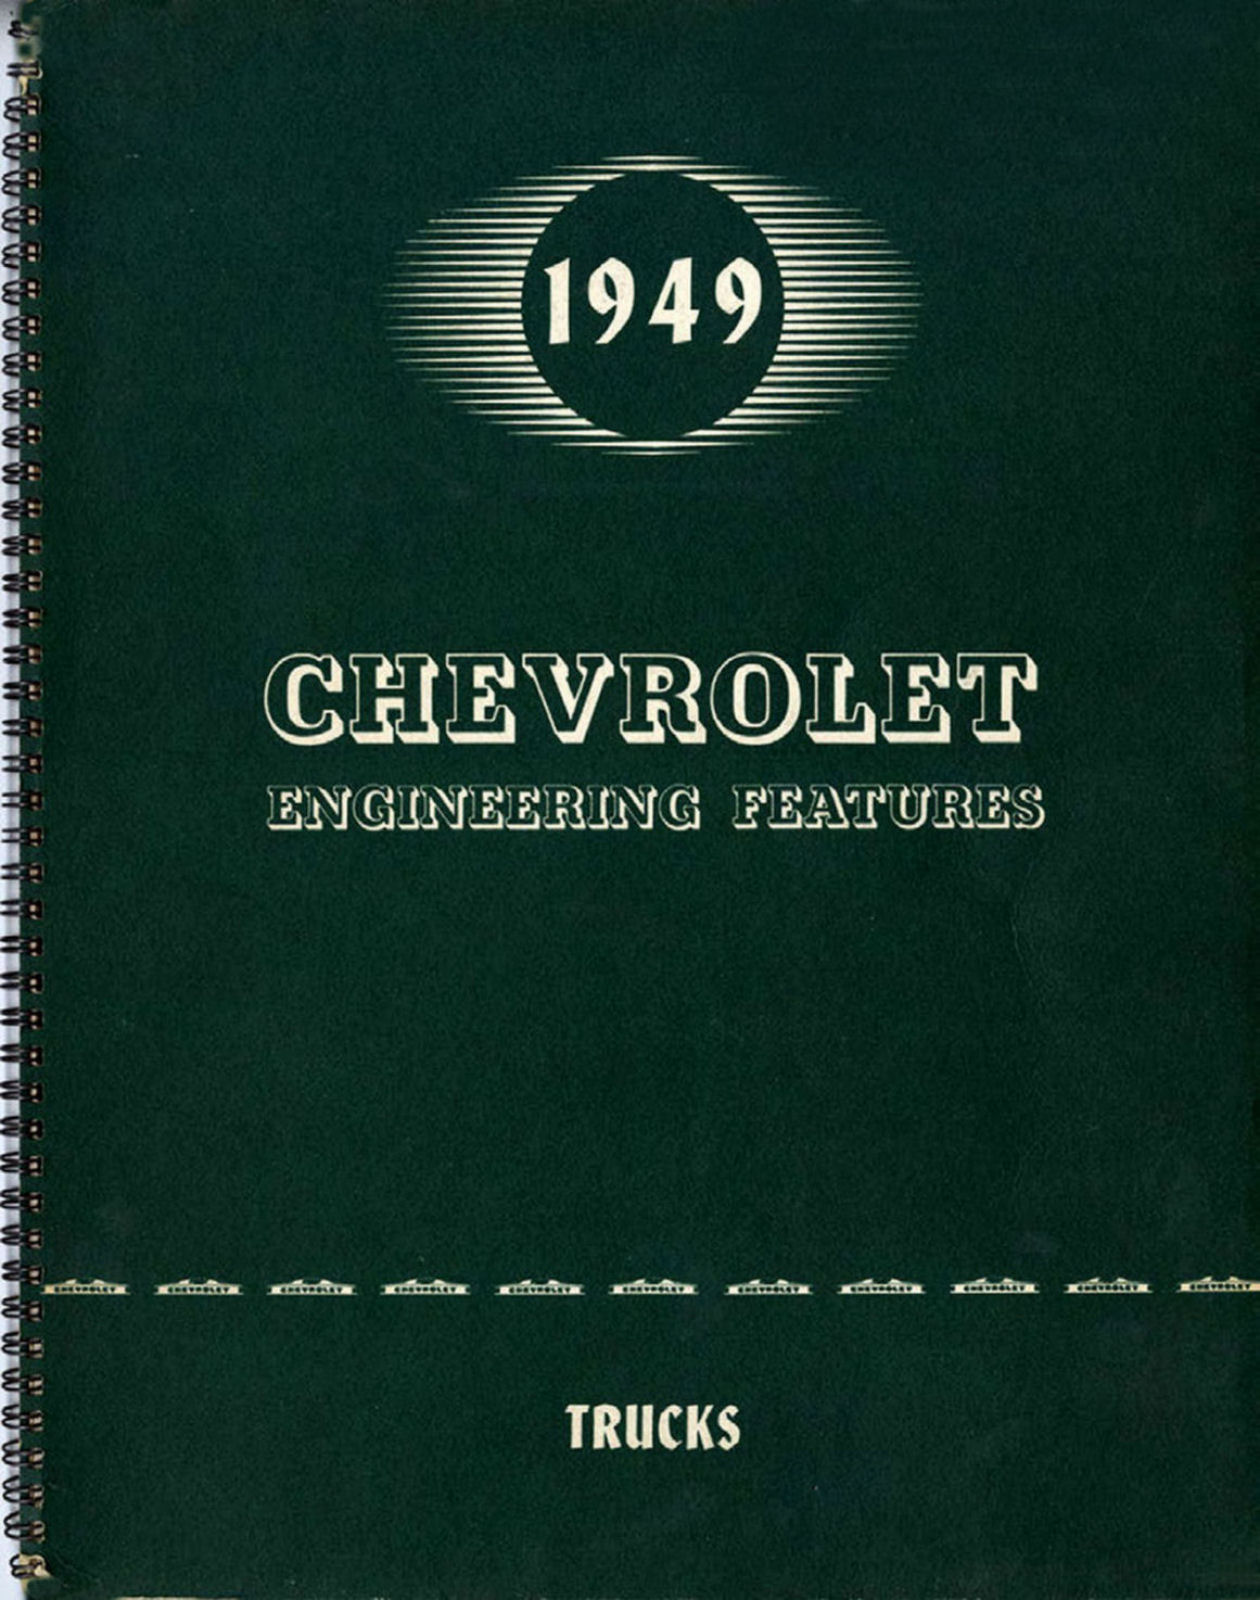 1949 Chevrolet Truck Engineering Features-01